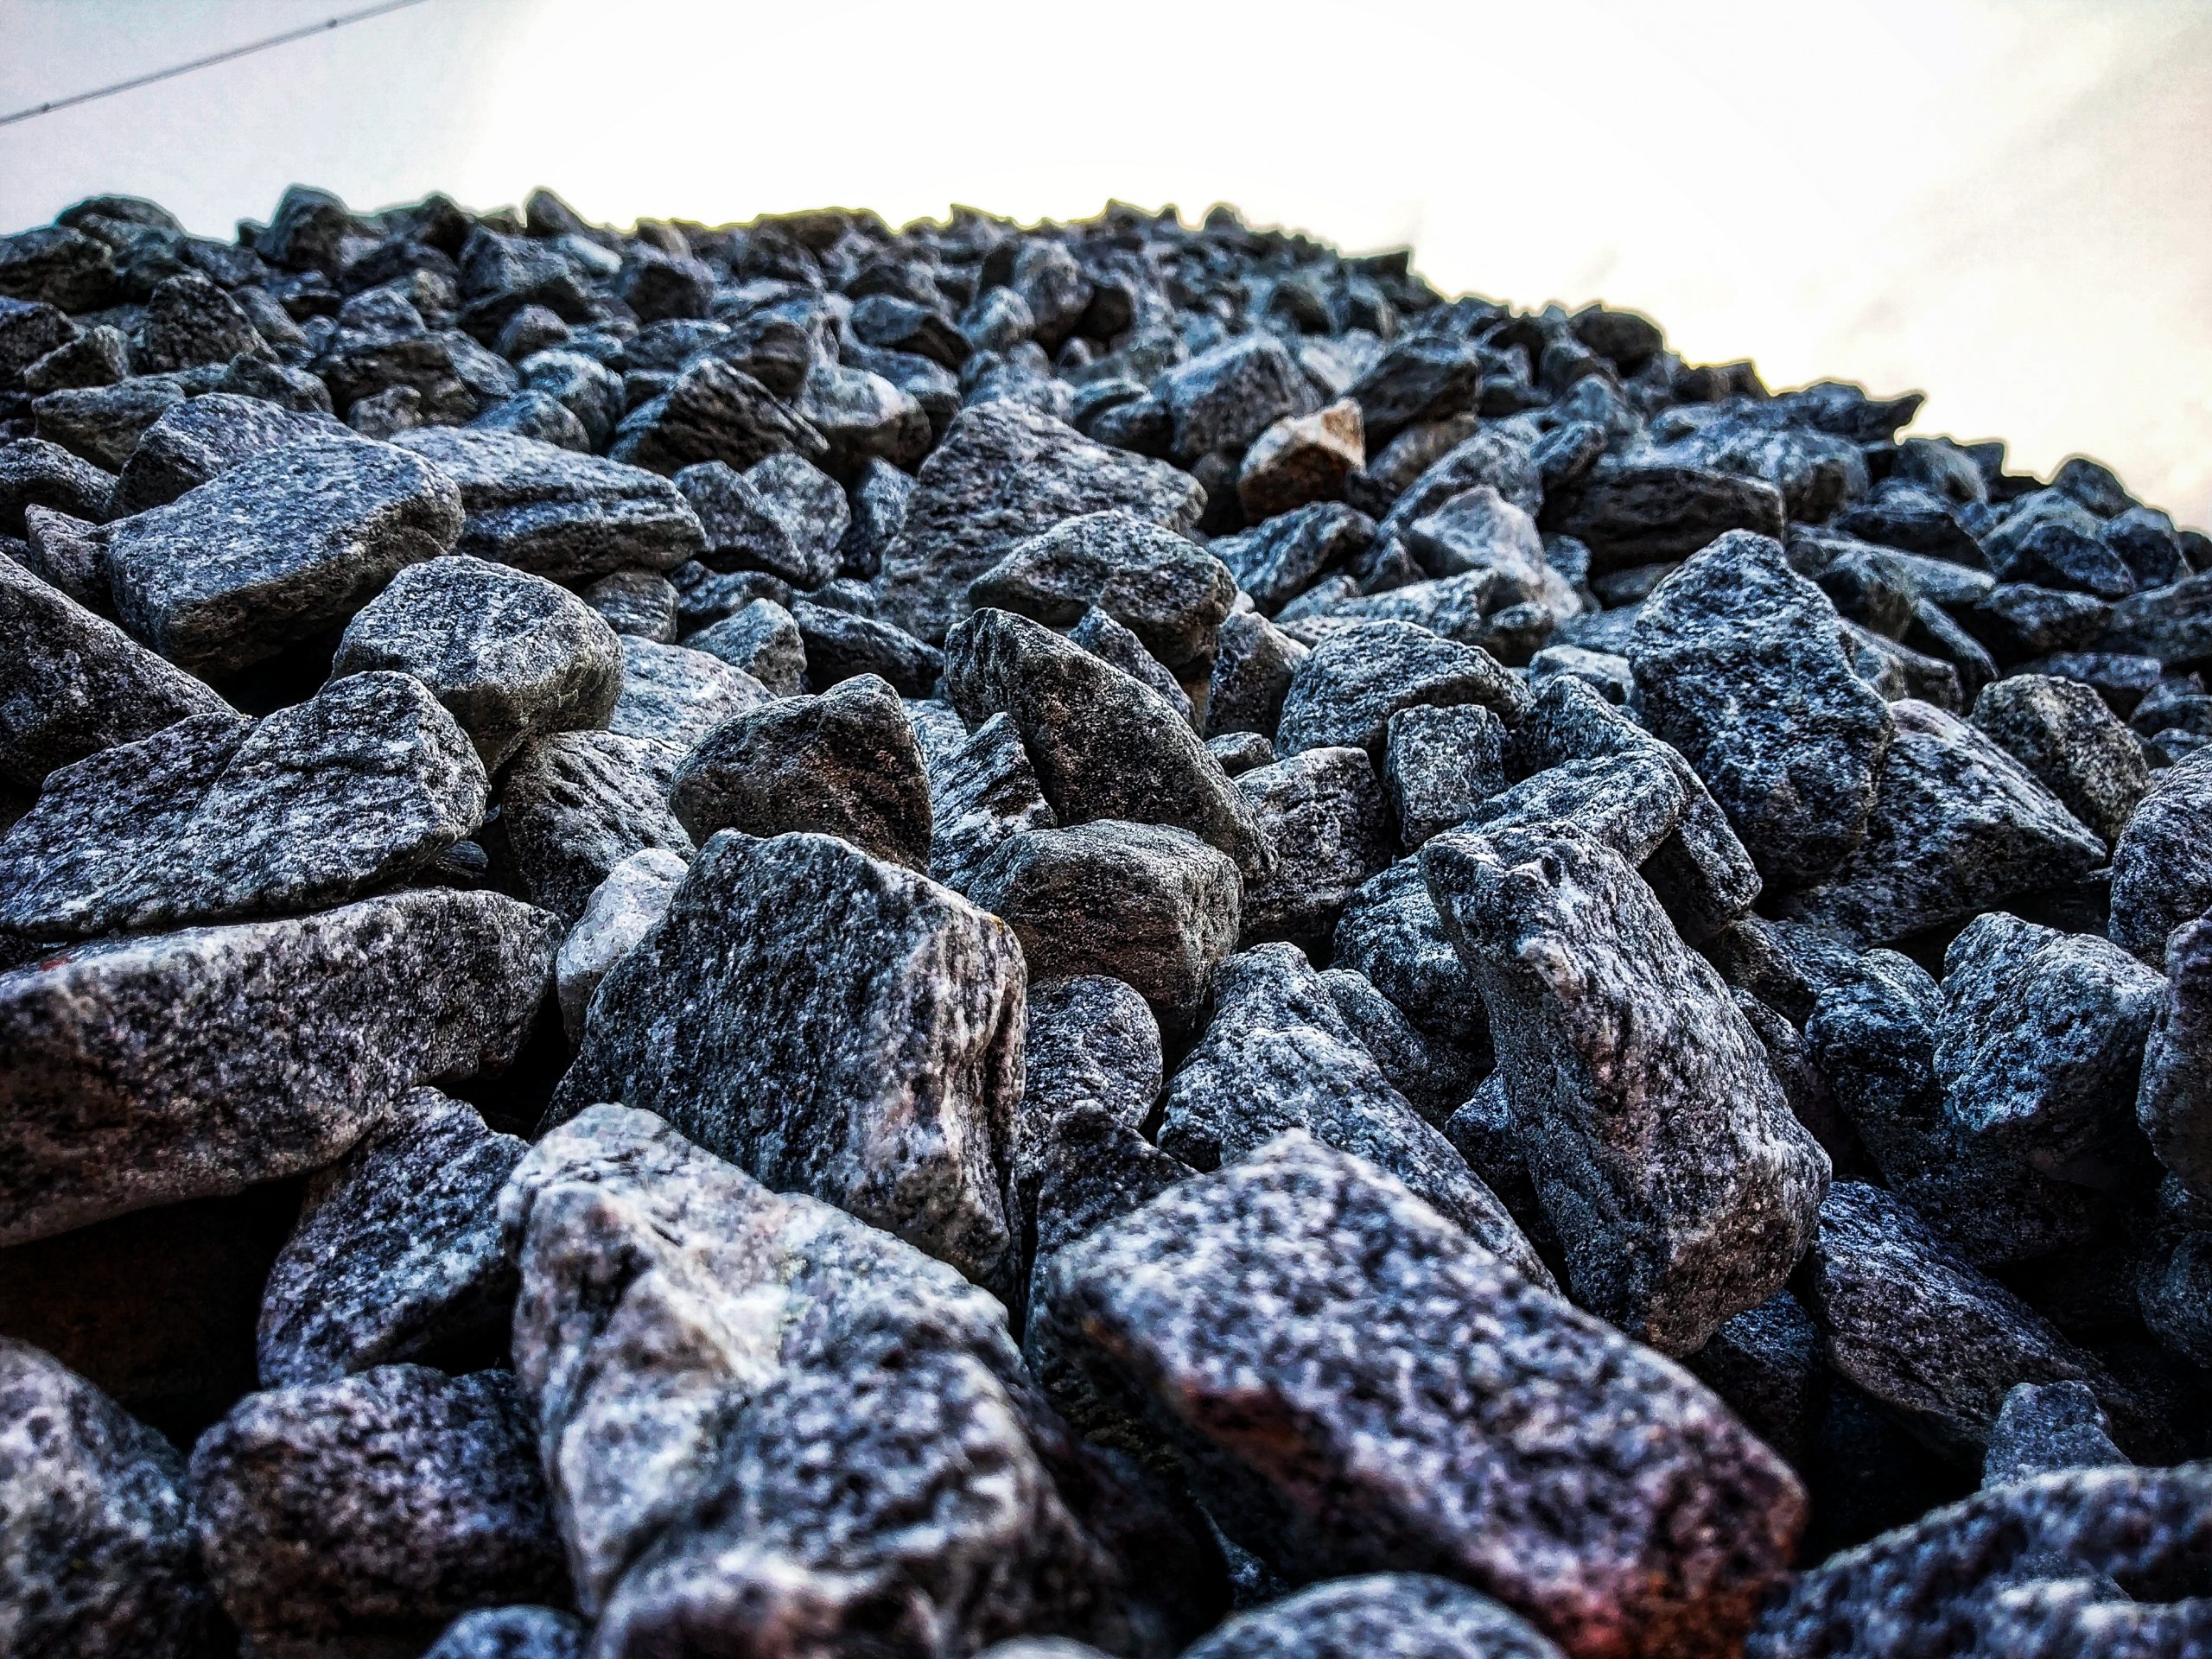 Gravels of rocks